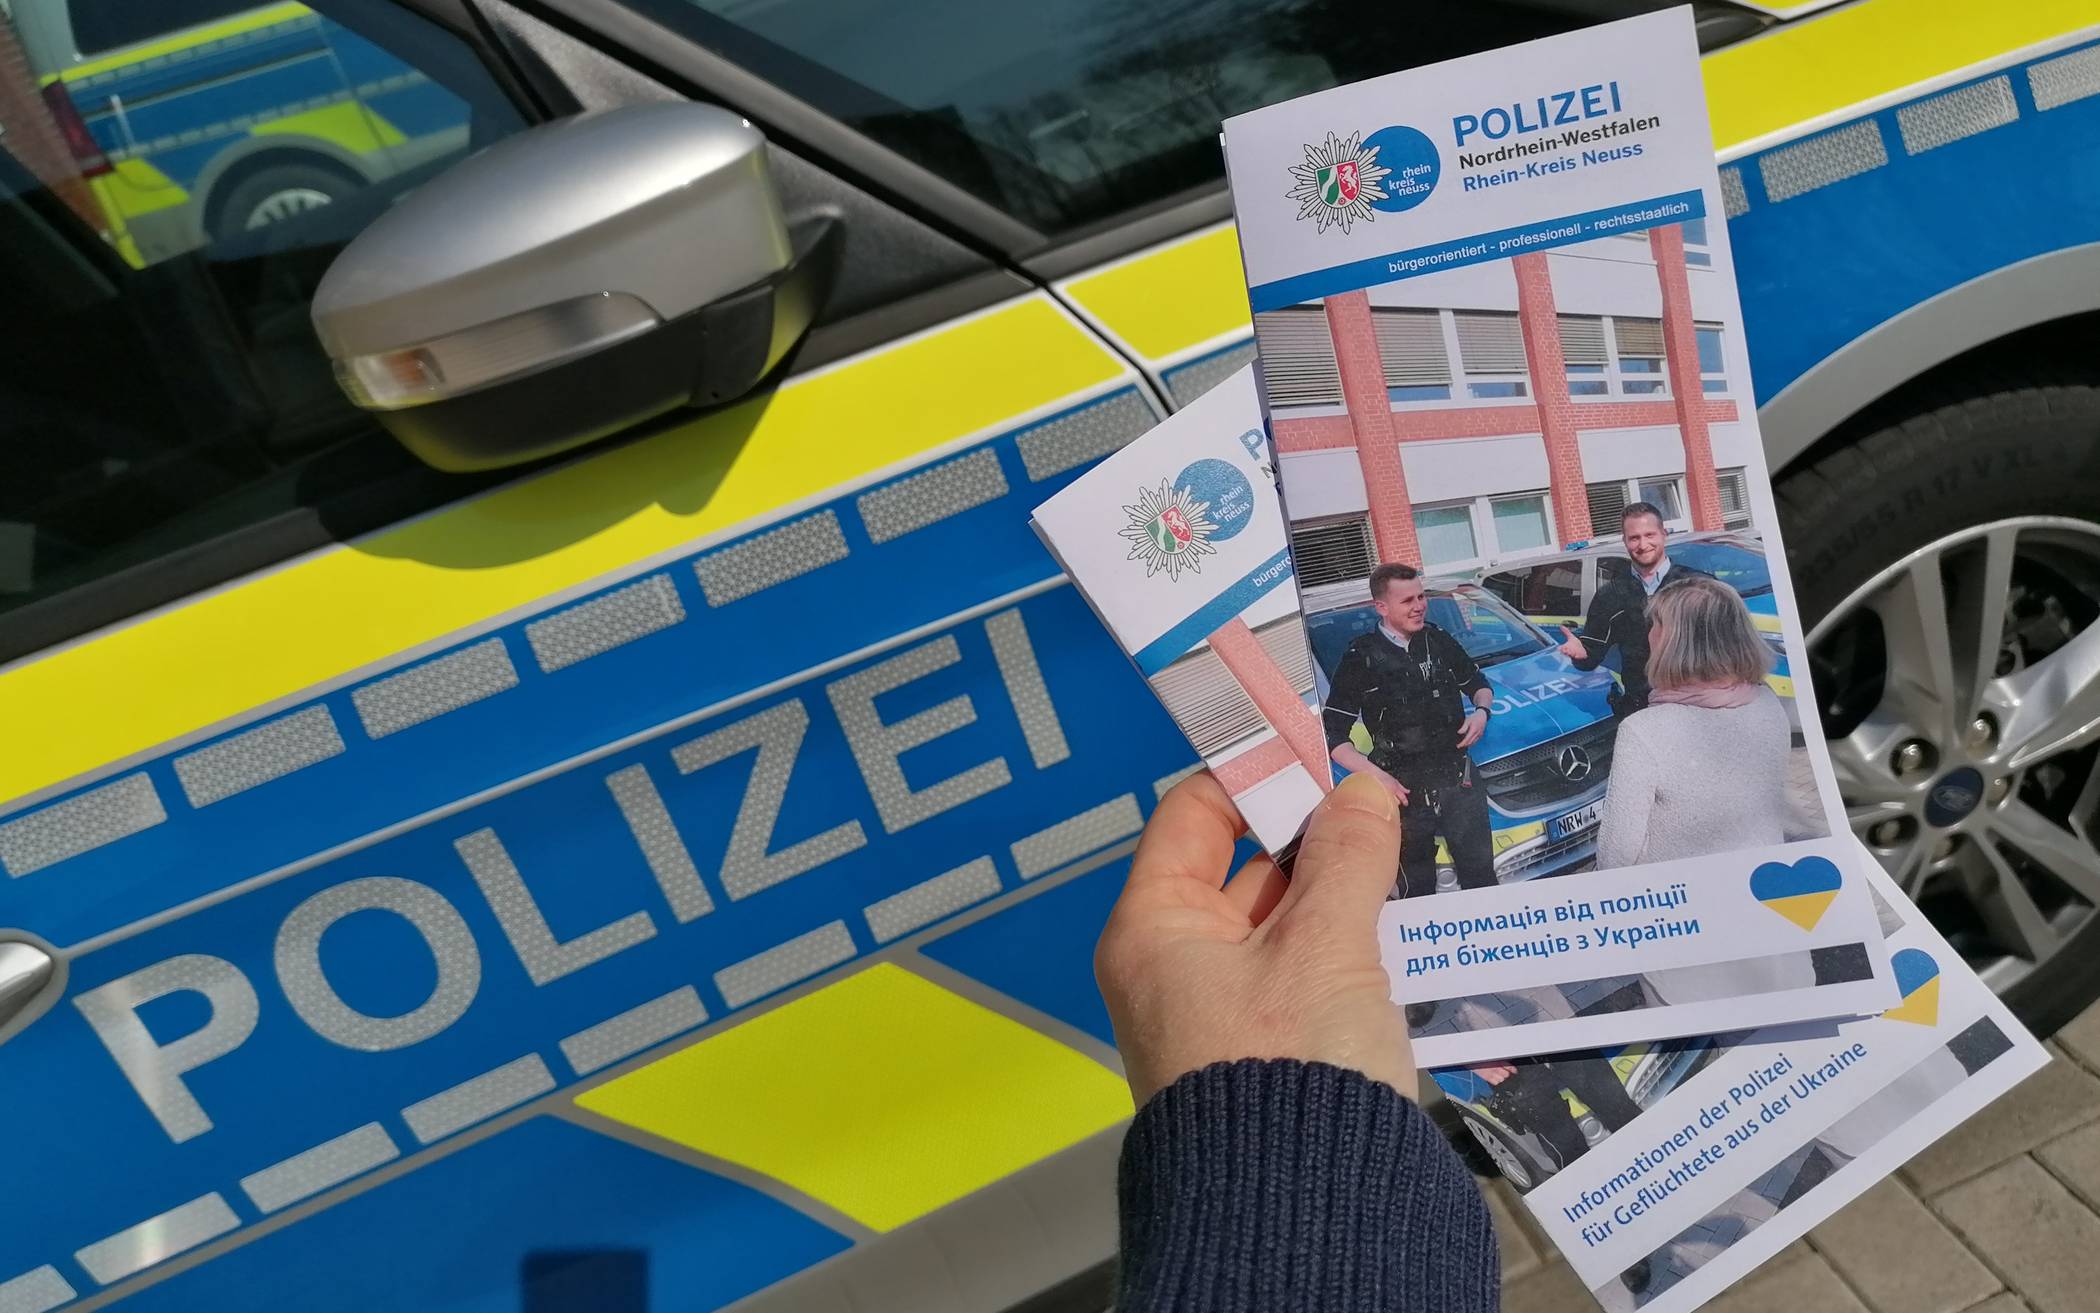 De Flyer von Polizei und Rhein-Kreis